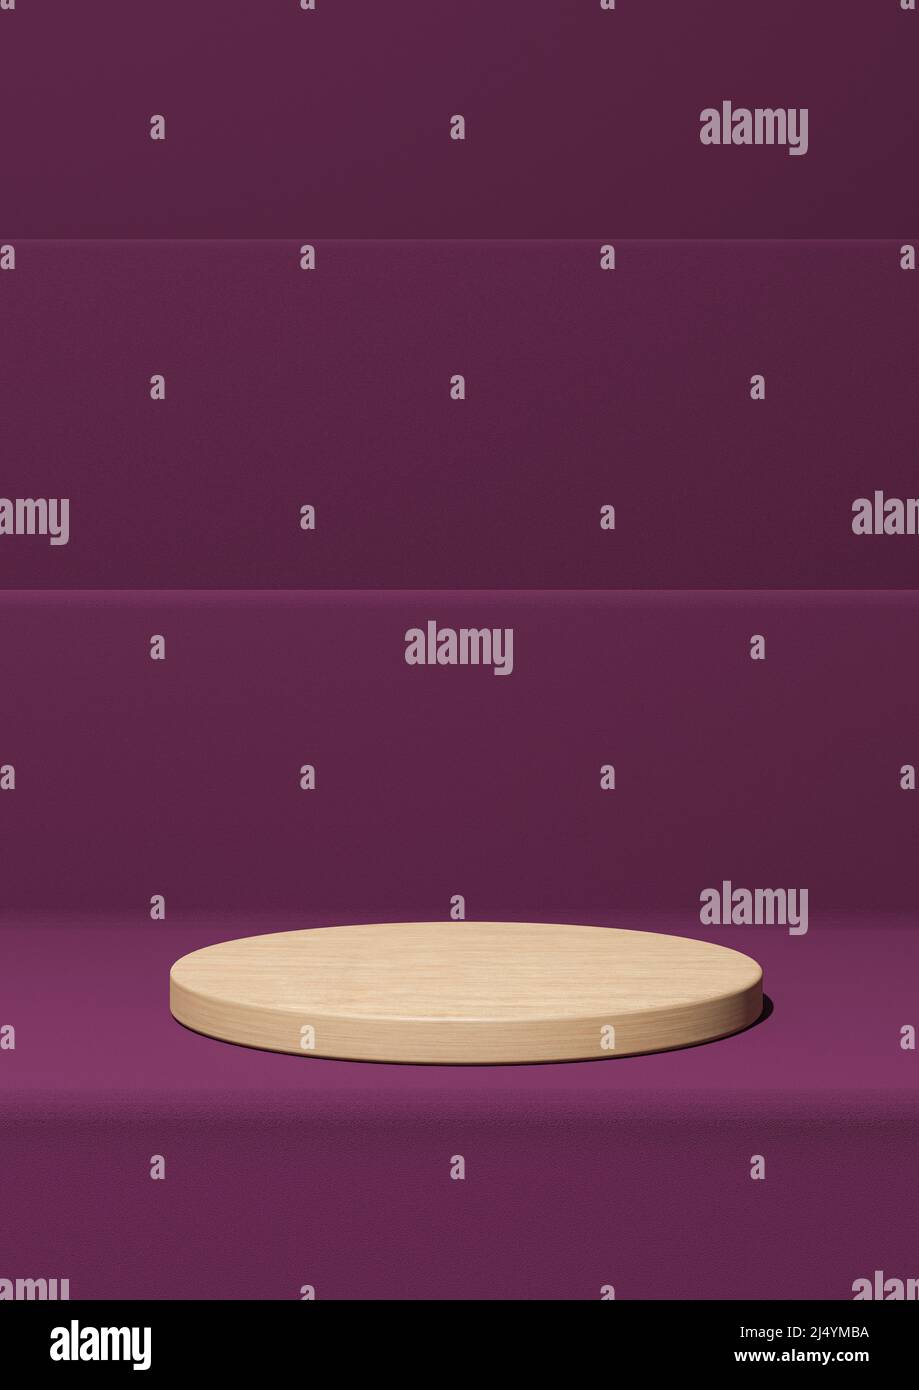 Magenta foncé, violet 3D rendant simple affichage de produit, fond minimal avec podium cylindre en bois sur les marches pour les produits de la nature Banque D'Images